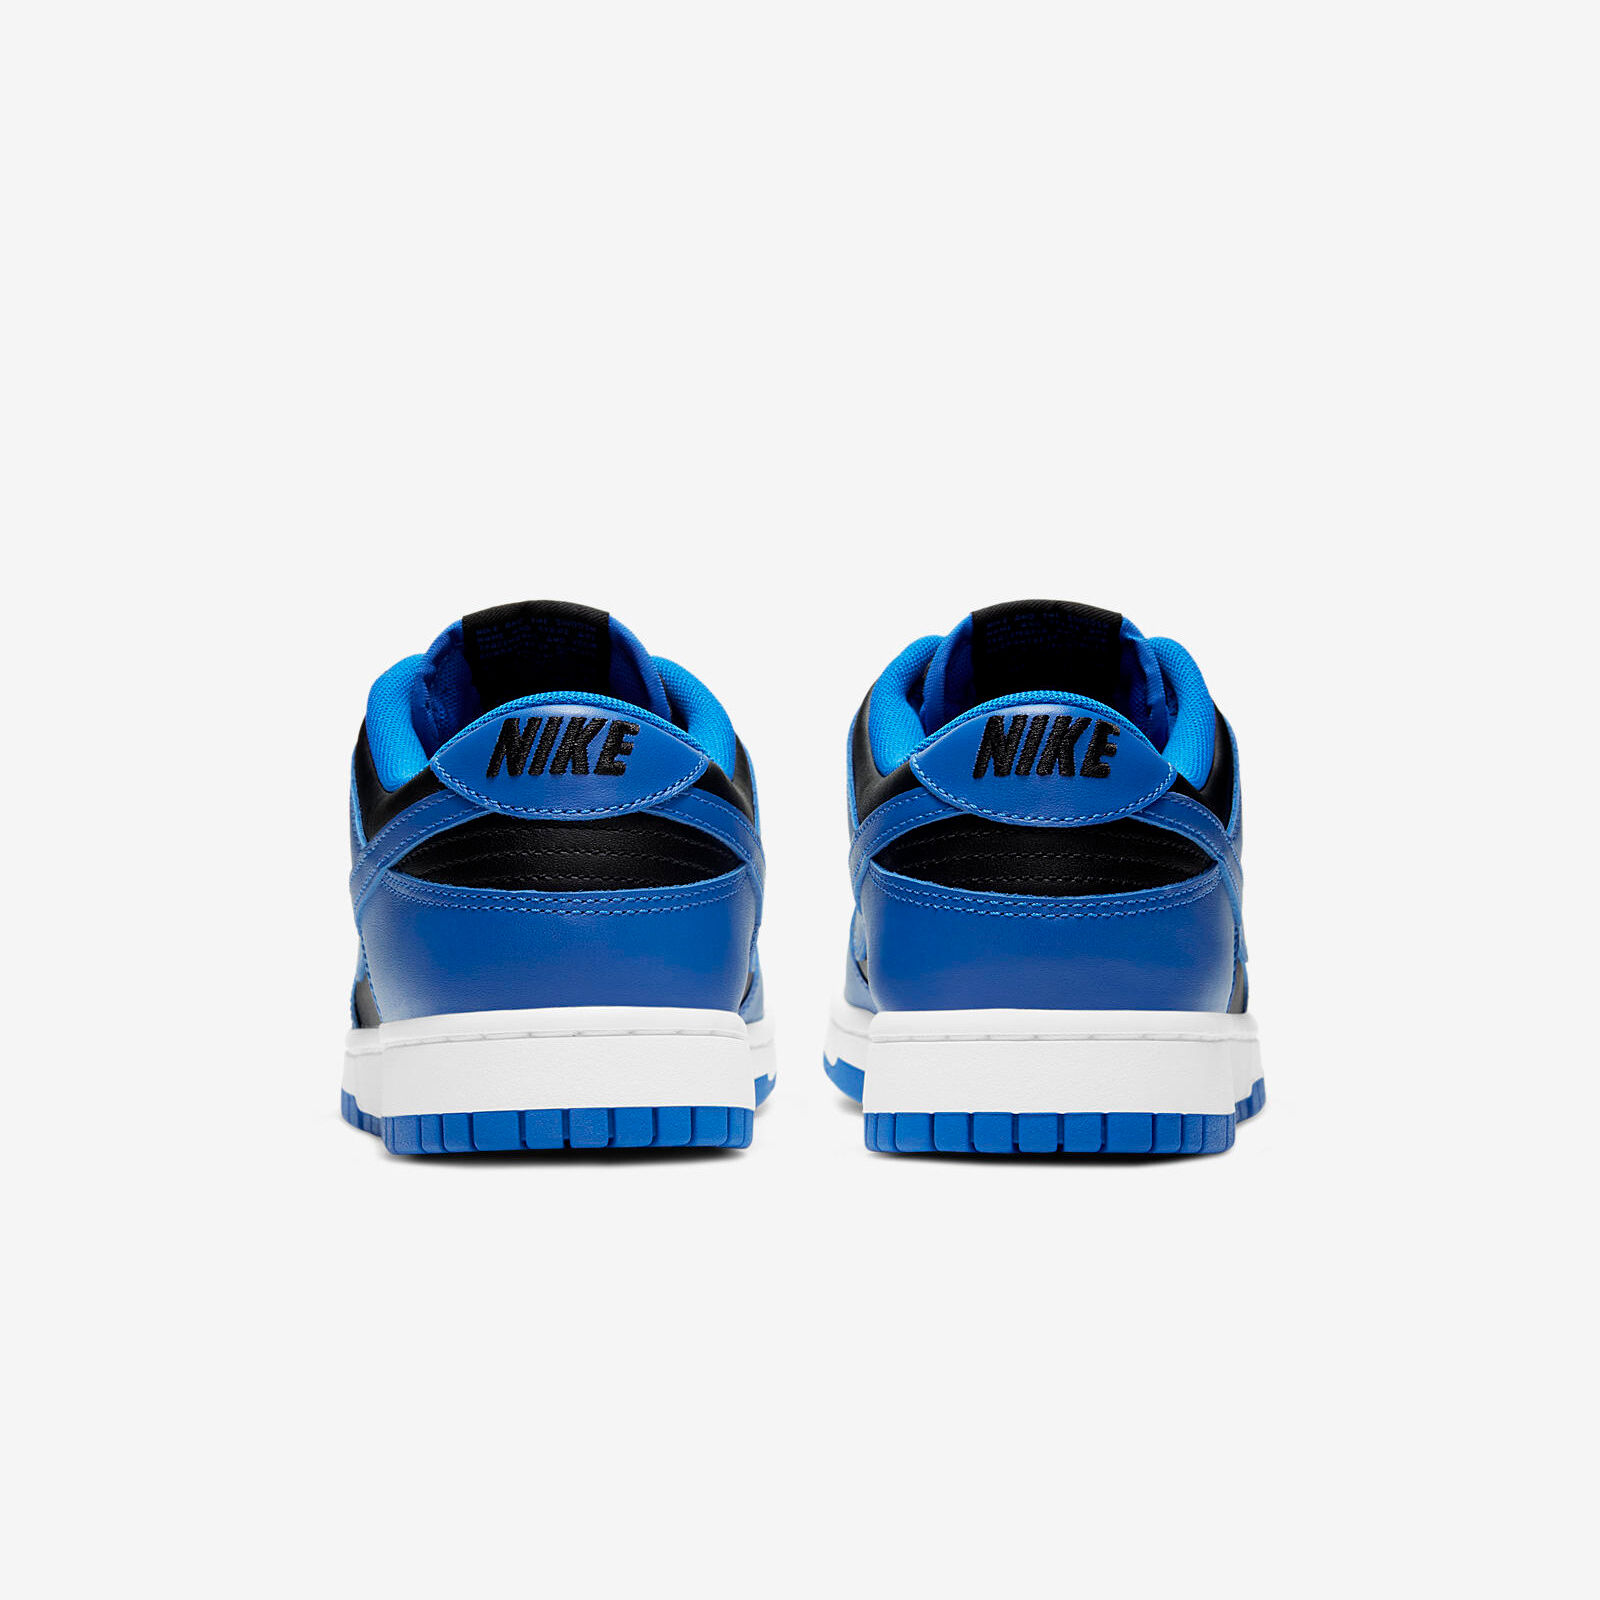 Nike Dunk Low
« Hyper Cobalt »